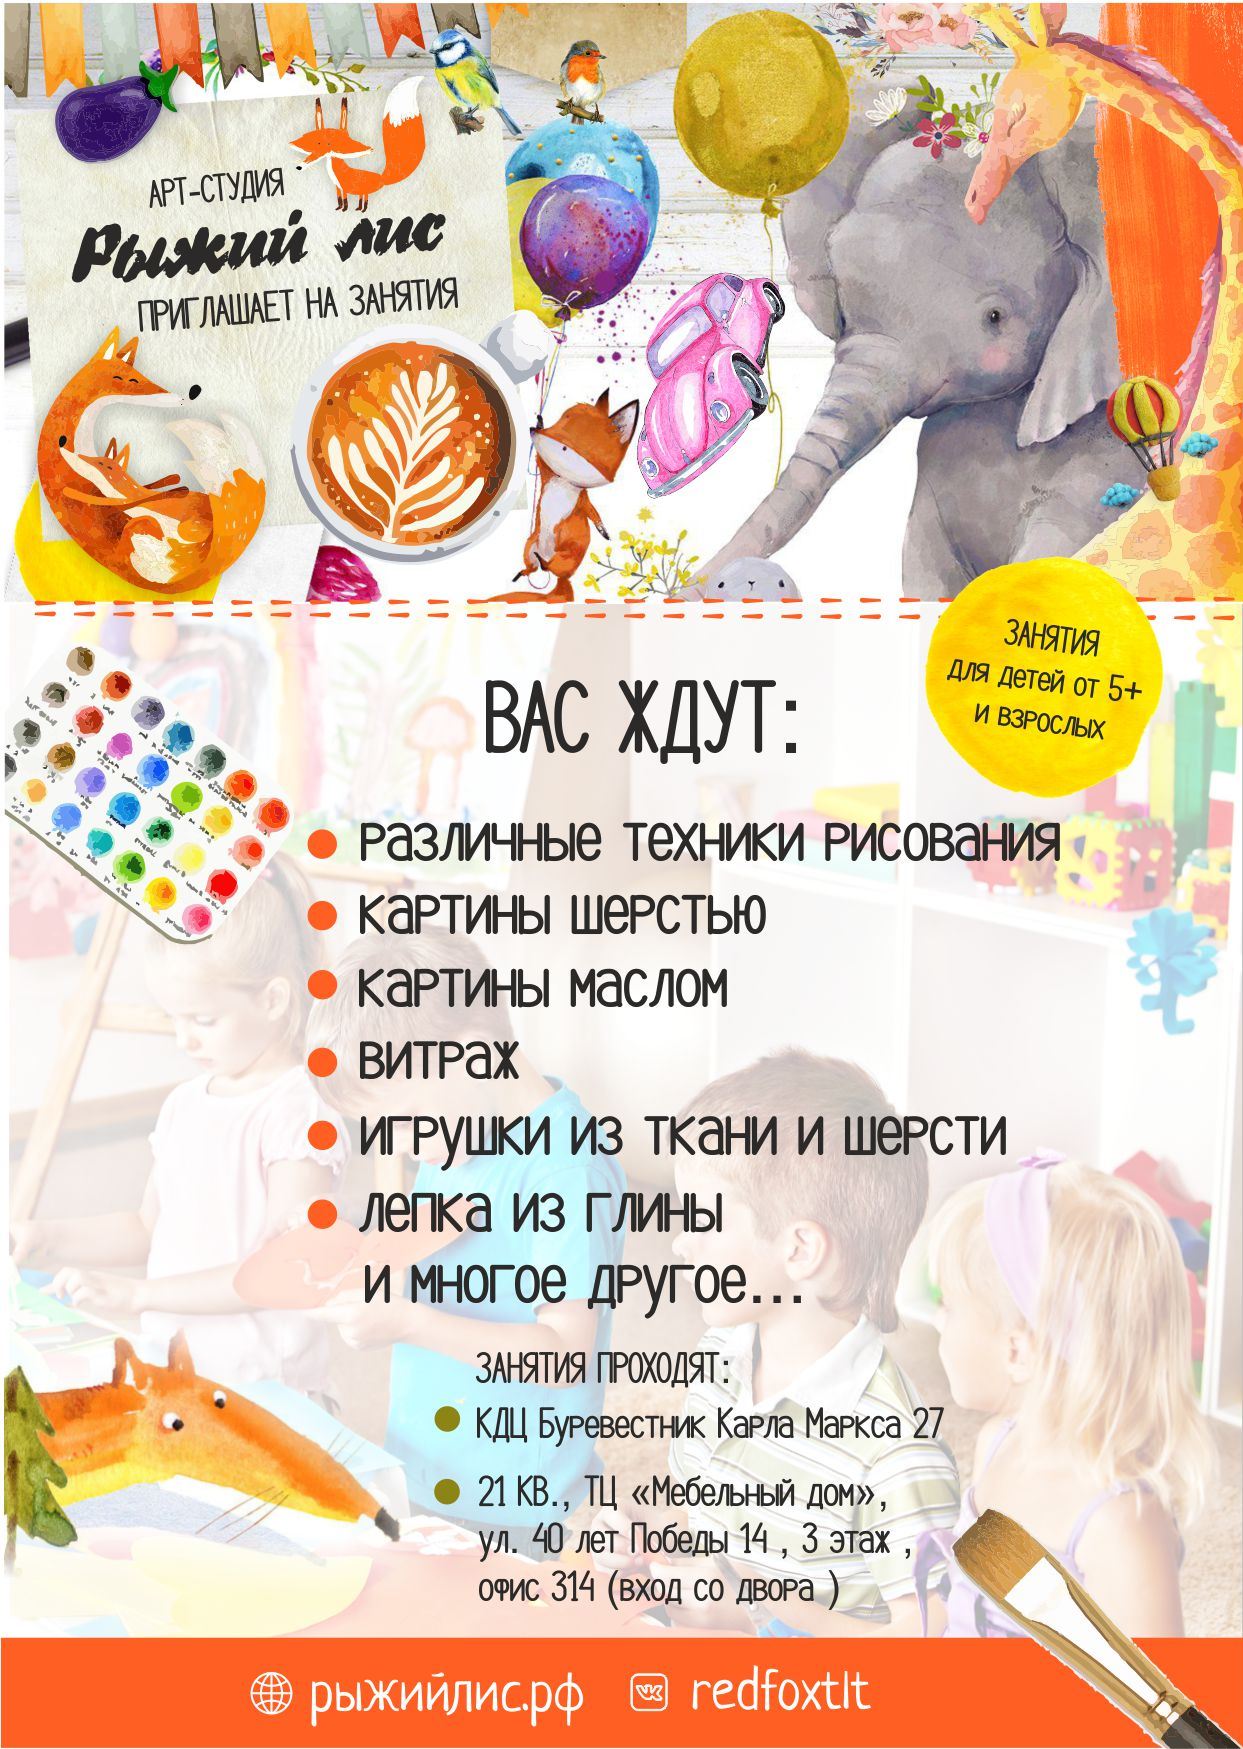 Мастер-классы для детей и взрослых в Тольятти. Игрушки своими руками, валяние из шерсти и многое другое